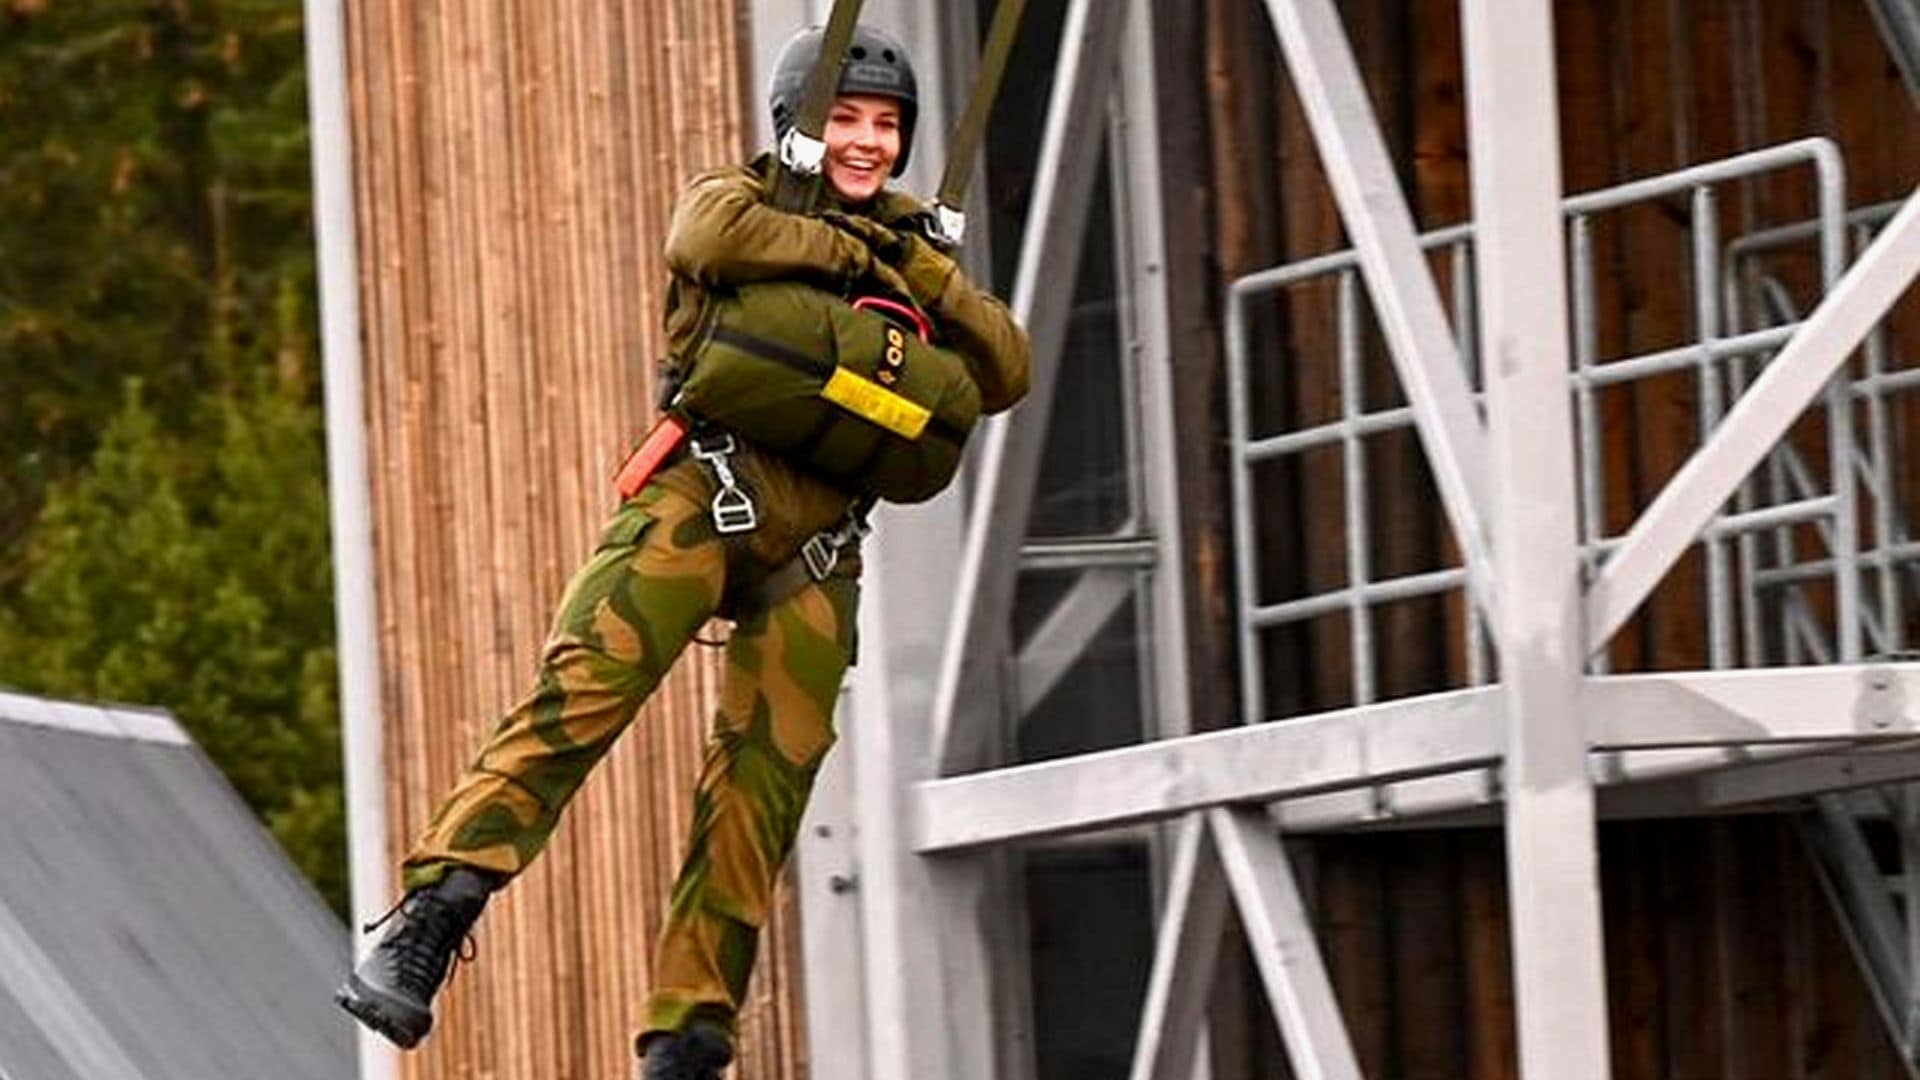 Una princesa de altos vuelos: Ingrid Alexandra de Noruega salta al vacío con el uniforme militar